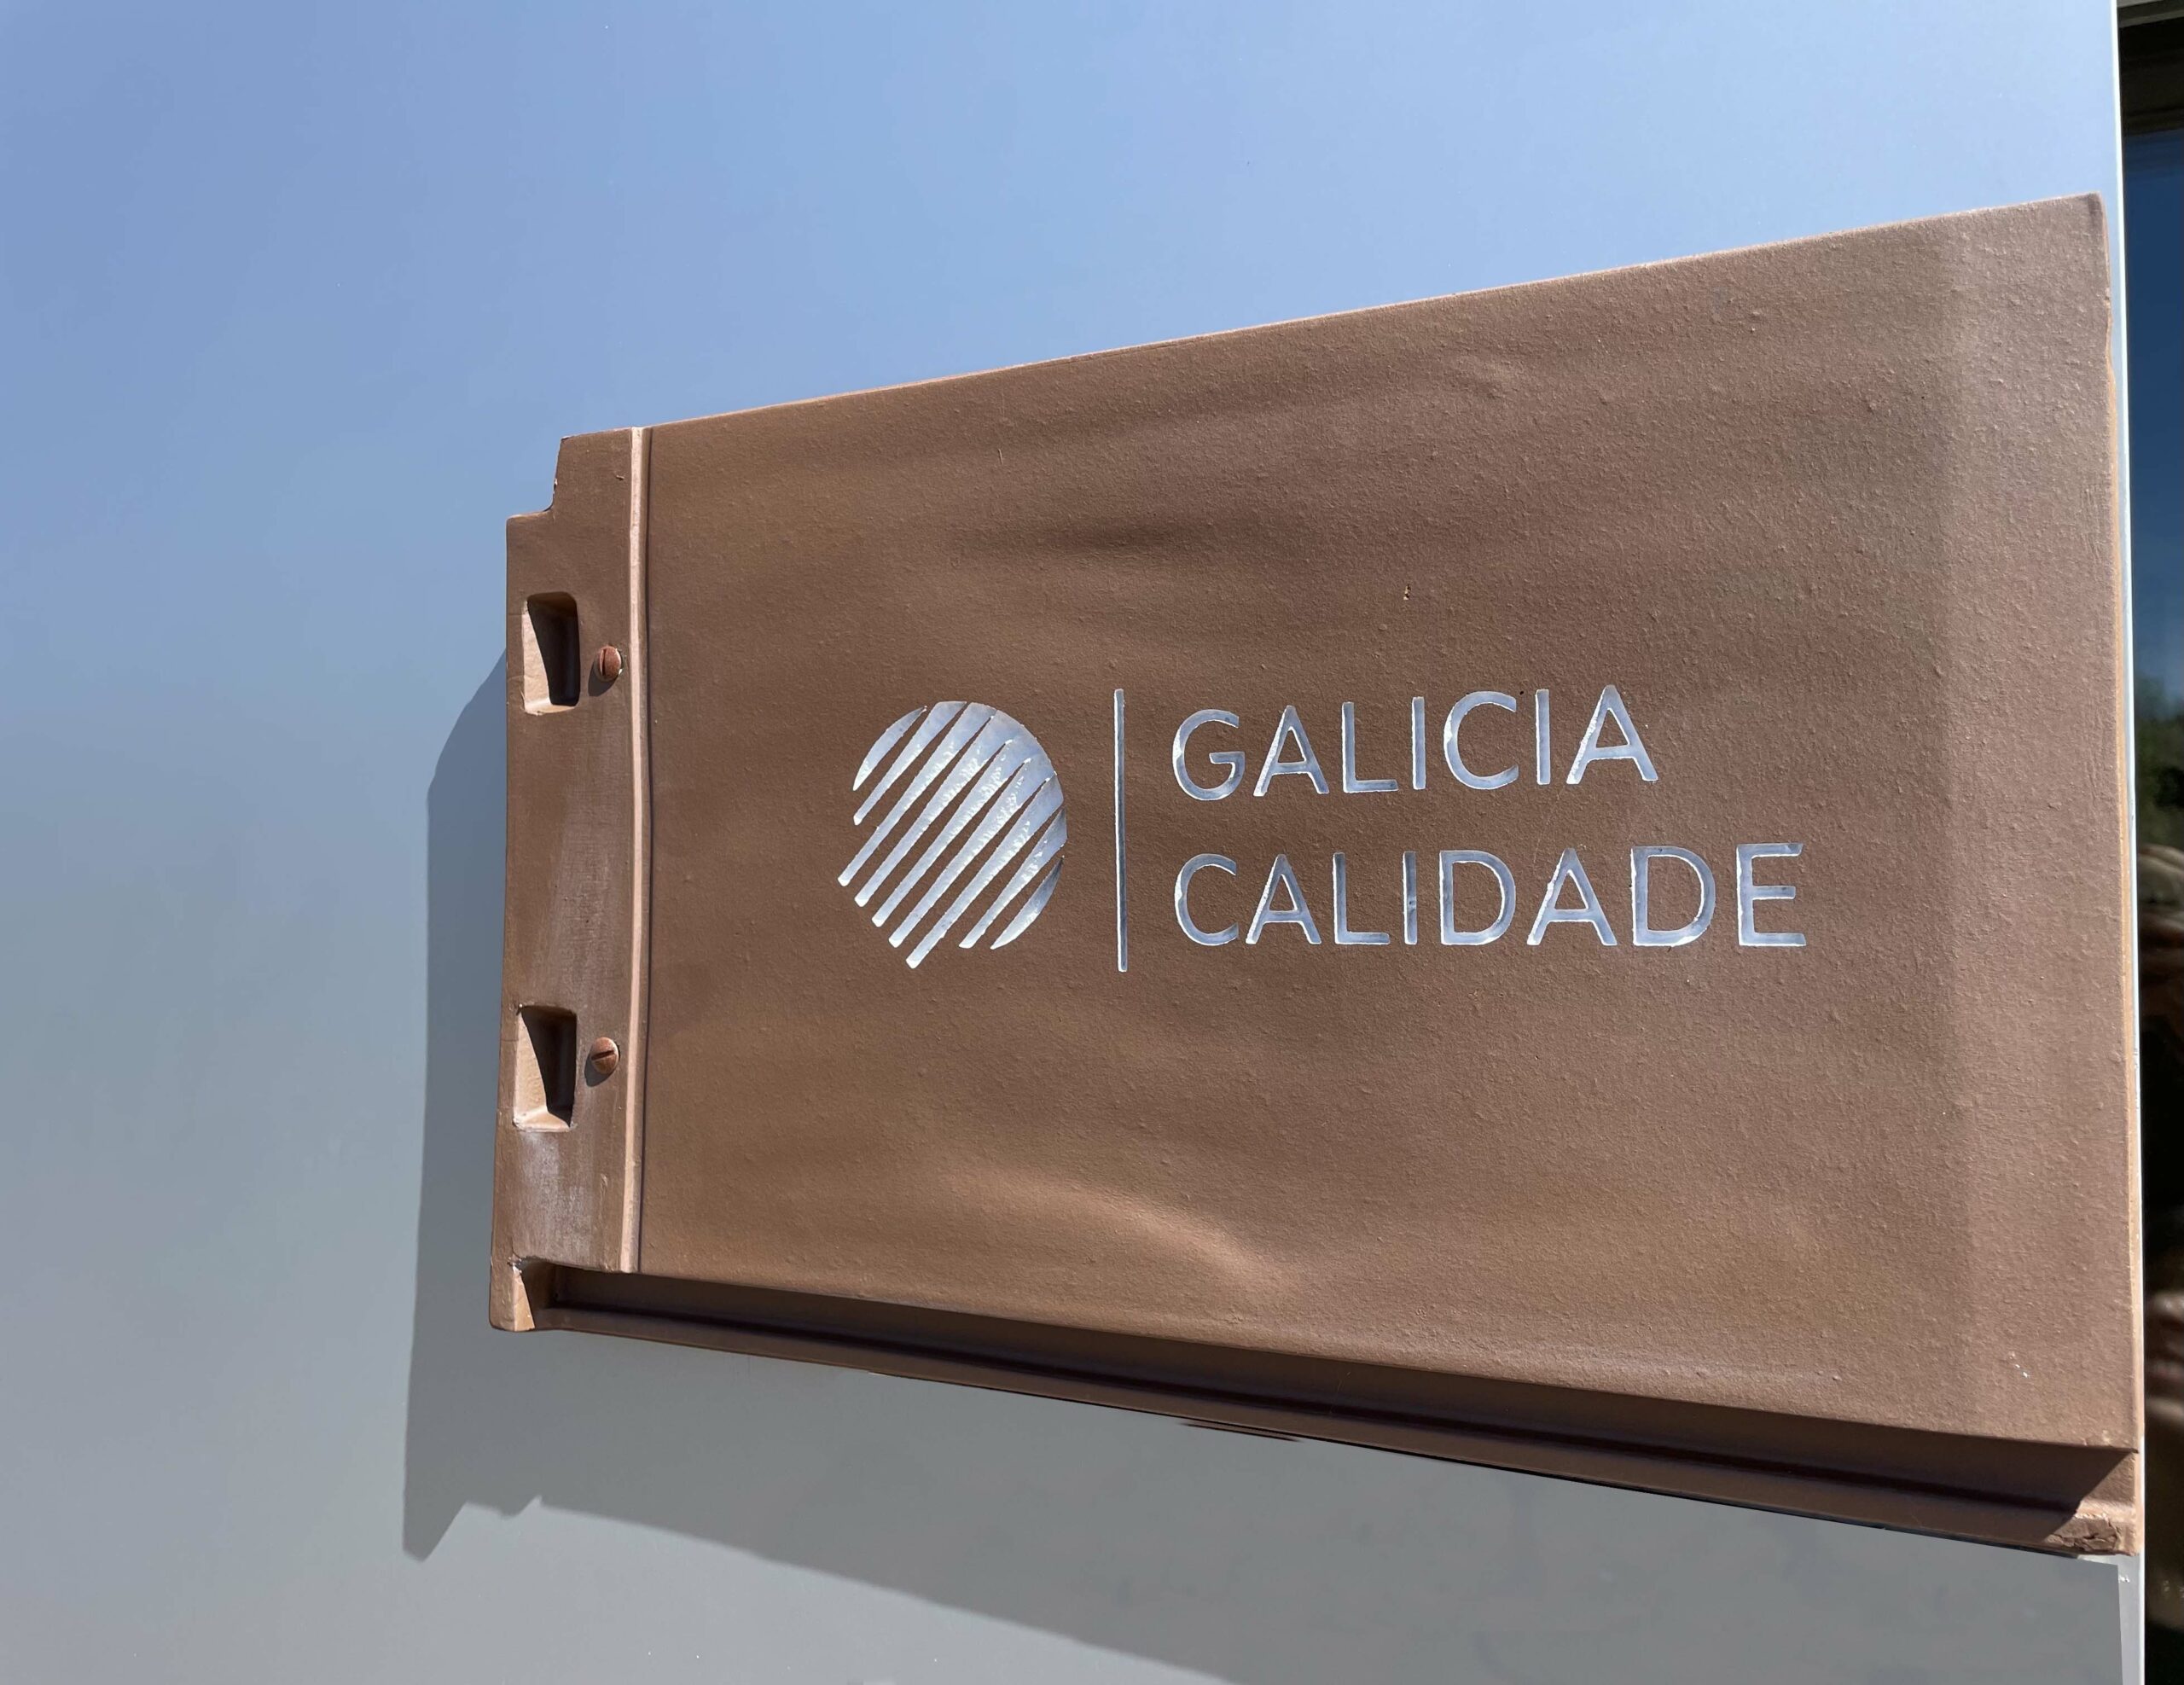 Las nuevas tejas cuentan con el respaldo del sello de garantía Galicia Calidade